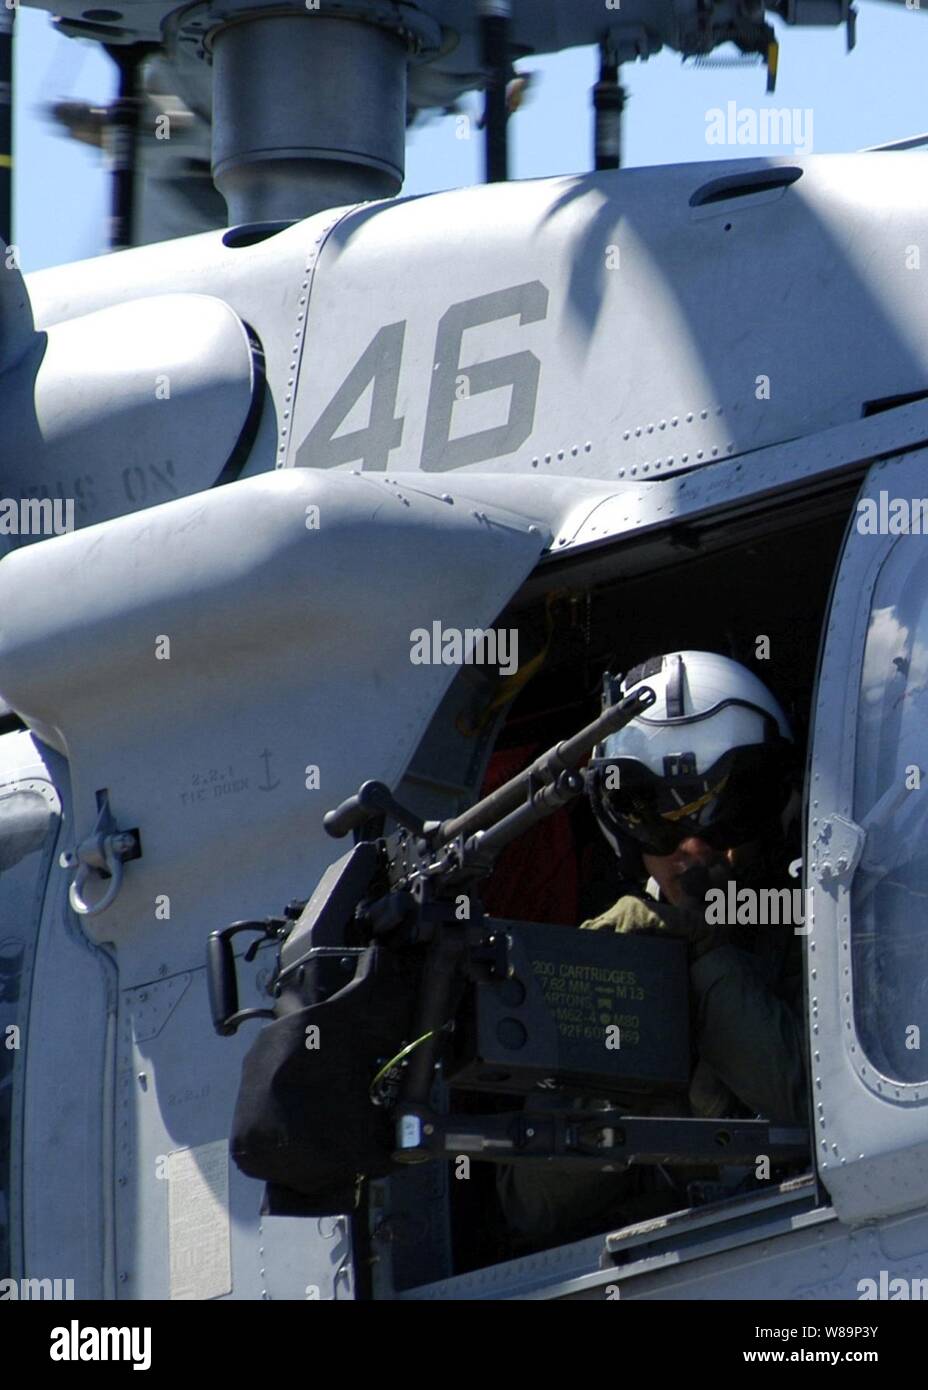 Marine Petty Officer 3. Klasse Nick Tookenay mans die Waffe auf einem MH-60S Knighthawk Hubschrauber, wie es das Deck des Amphibious Assault ship USS Kearsarge (LHD 3) am 20. Juni 2004. Die kearsarge transportiert Elemente der 24 Marine Expeditionary Unit zur Unterstützung der Operation Iraqi Freedom. Stockfoto